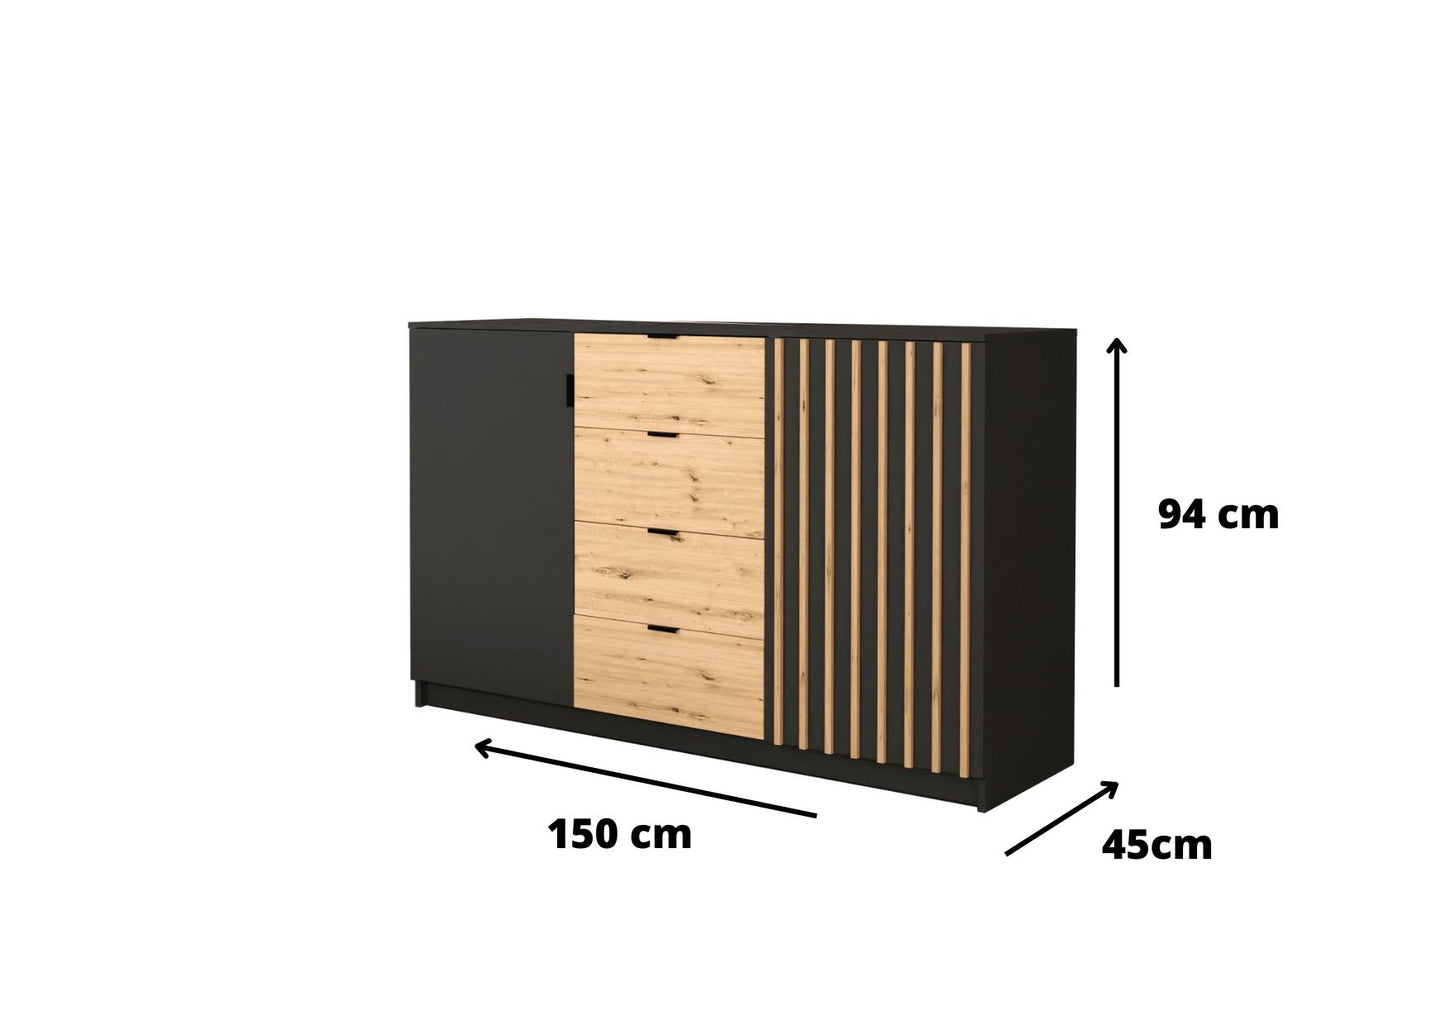 Wymiary komody z szufladami Amsterdam są dostosowane tak, aby była ona stabilna i funkcjonalna. Odpowiednia szerokość, głębokość i wysokość sprawią, że będzie to mebel pasujący zarówno do salonu, pokoju dziennego, sypialni, przedpokoju i innych tego typu pomieszczeń.